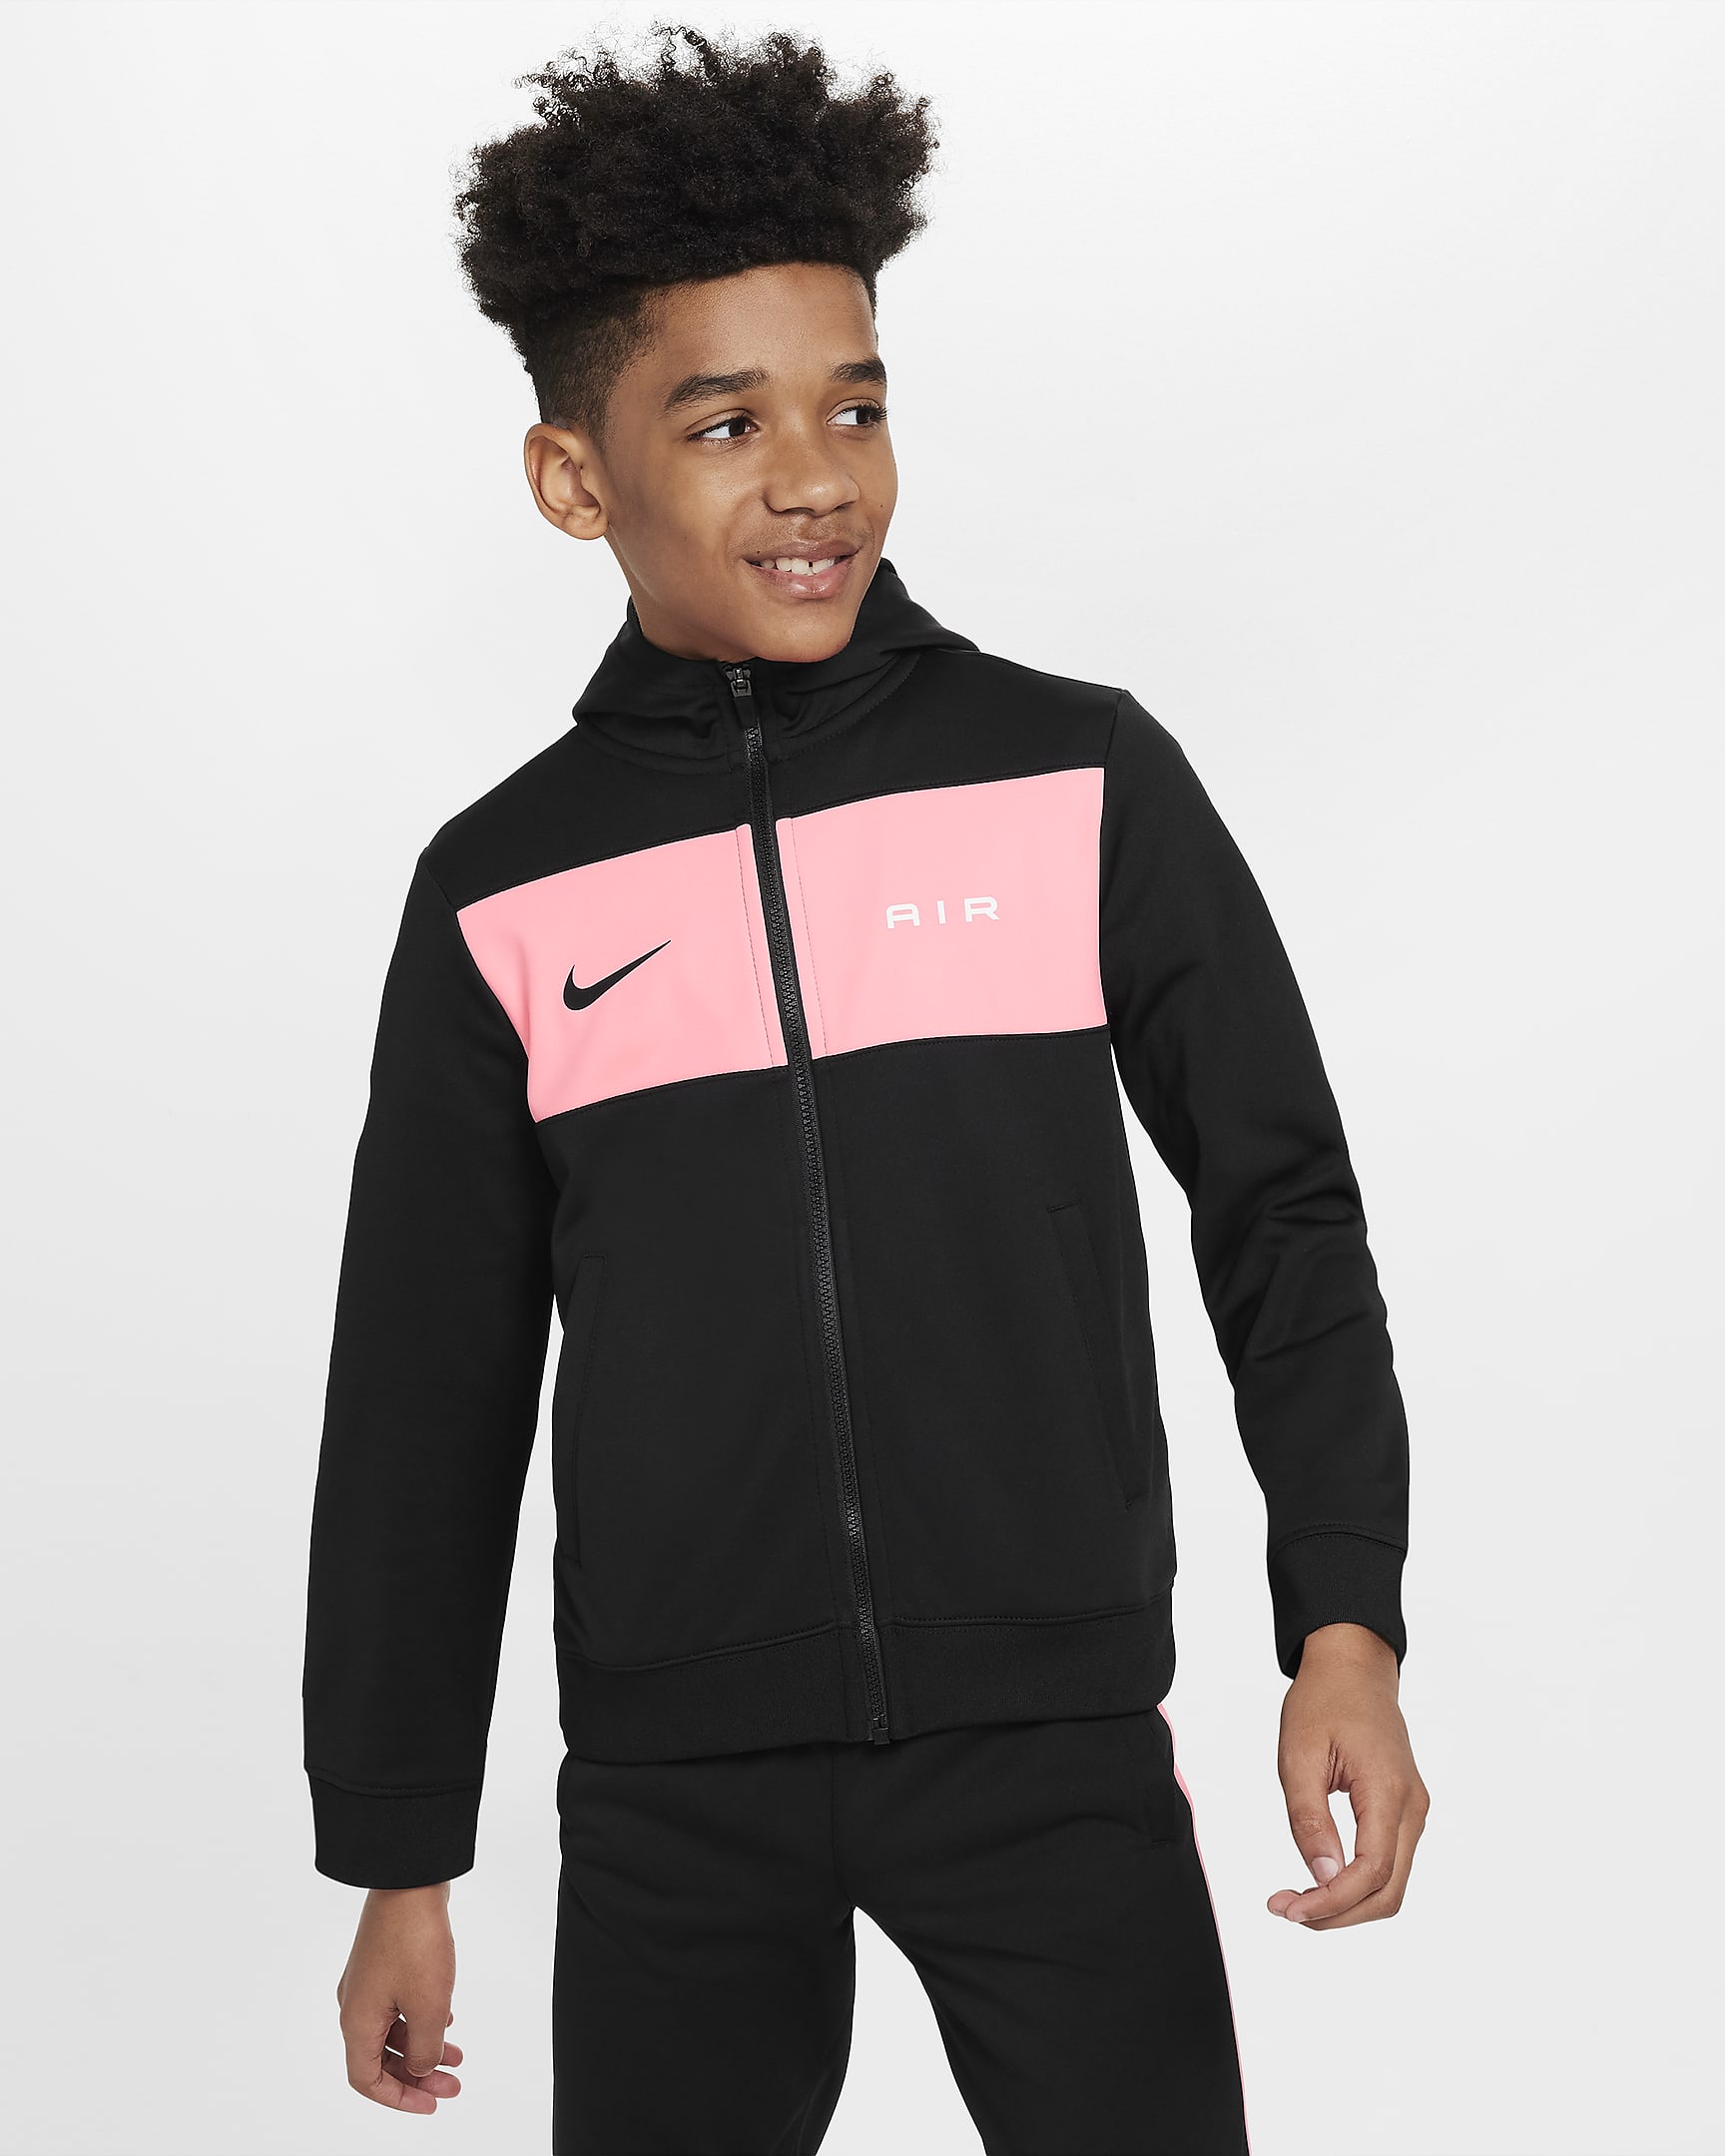 Nike Air Kapuzenjacke für ältere Kinder (Jungen) - Schwarz/Pink Foam